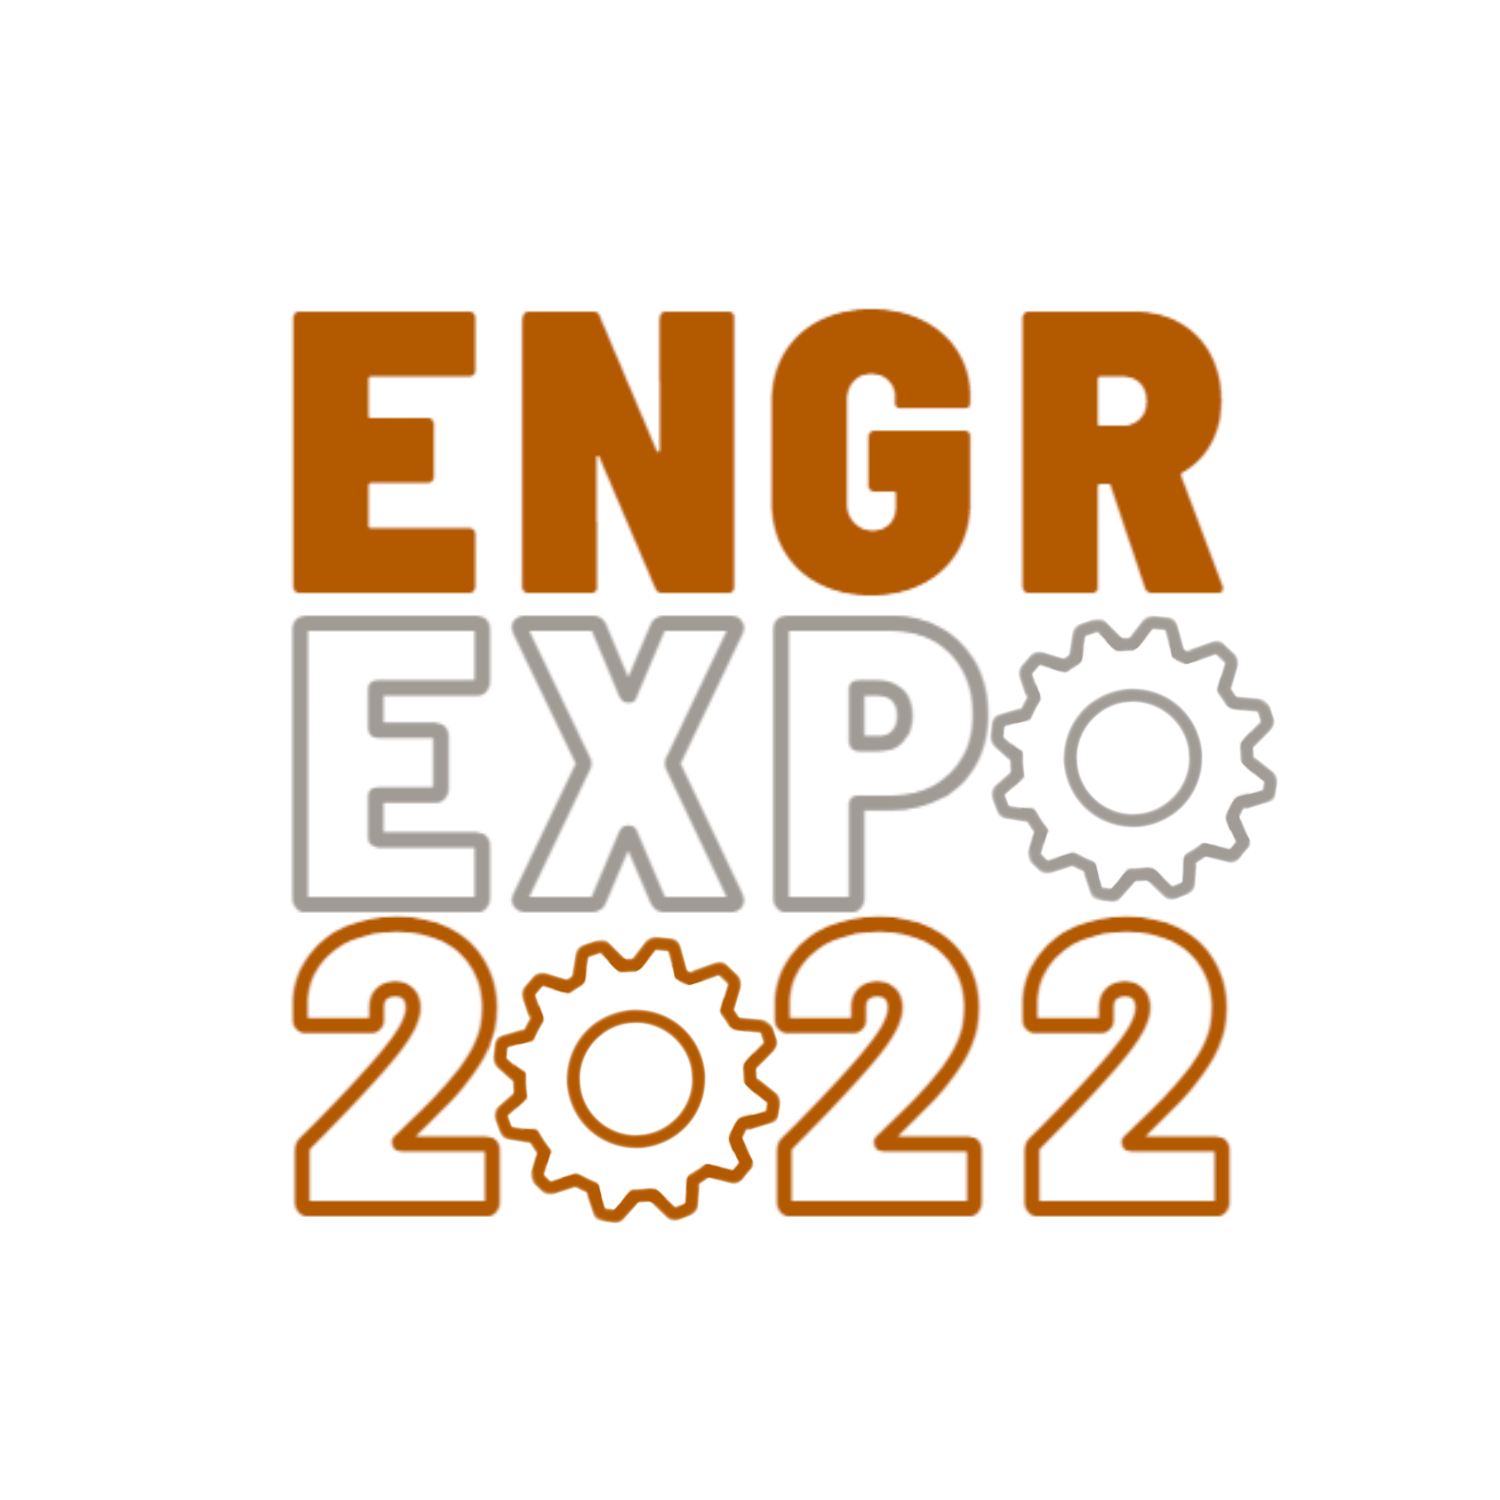 The 2021 Expo logo